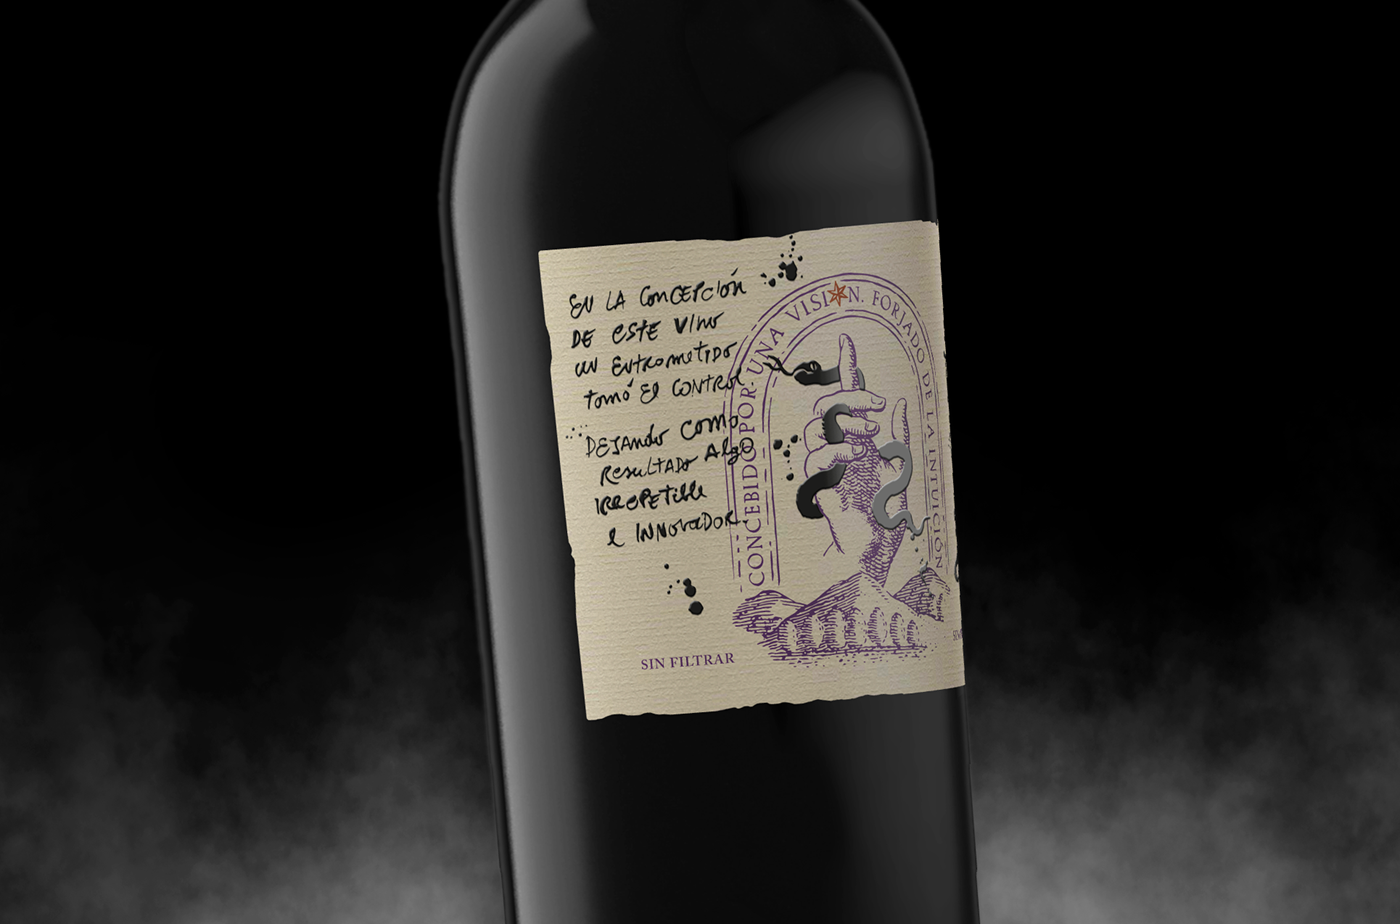 art black Classic graphic design  ILLUSTRATION  luxury Packaging premium purple wine label